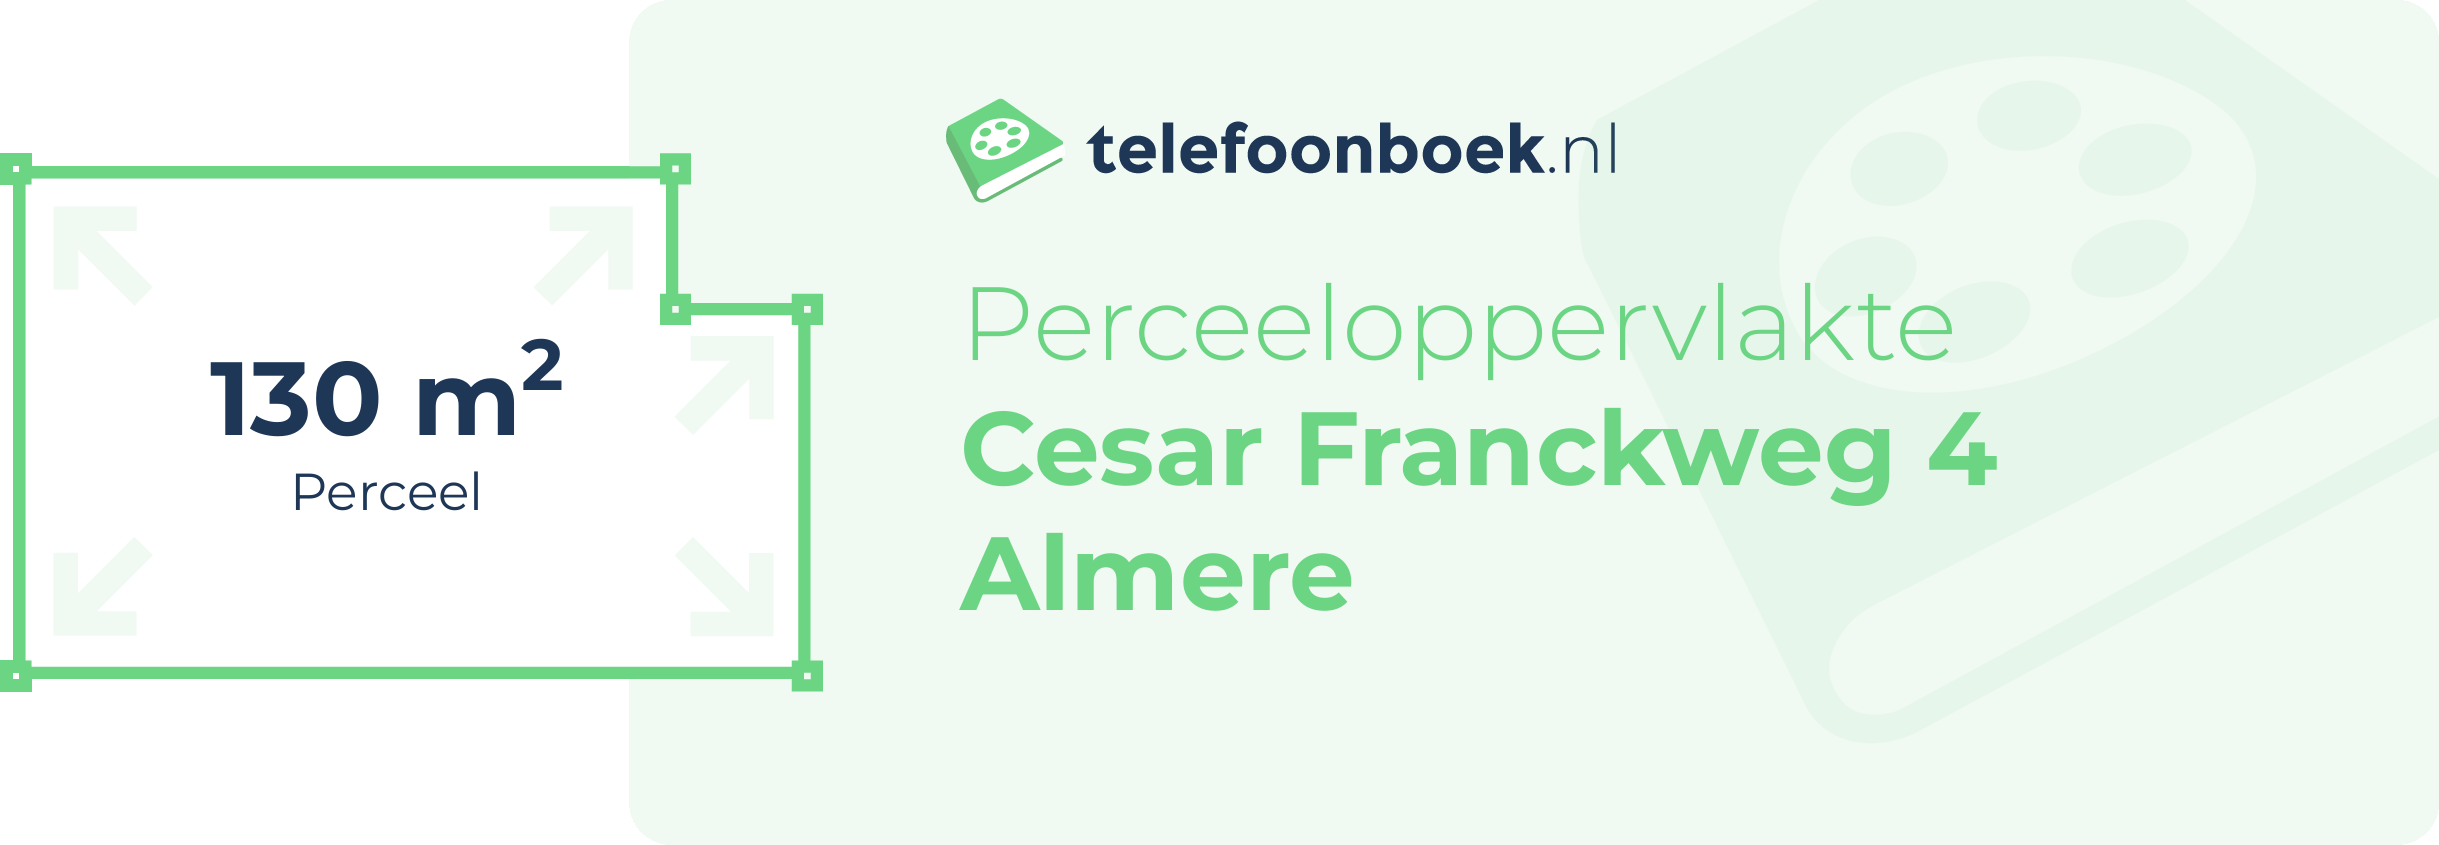 Perceeloppervlakte Cesar Franckweg 4 Almere